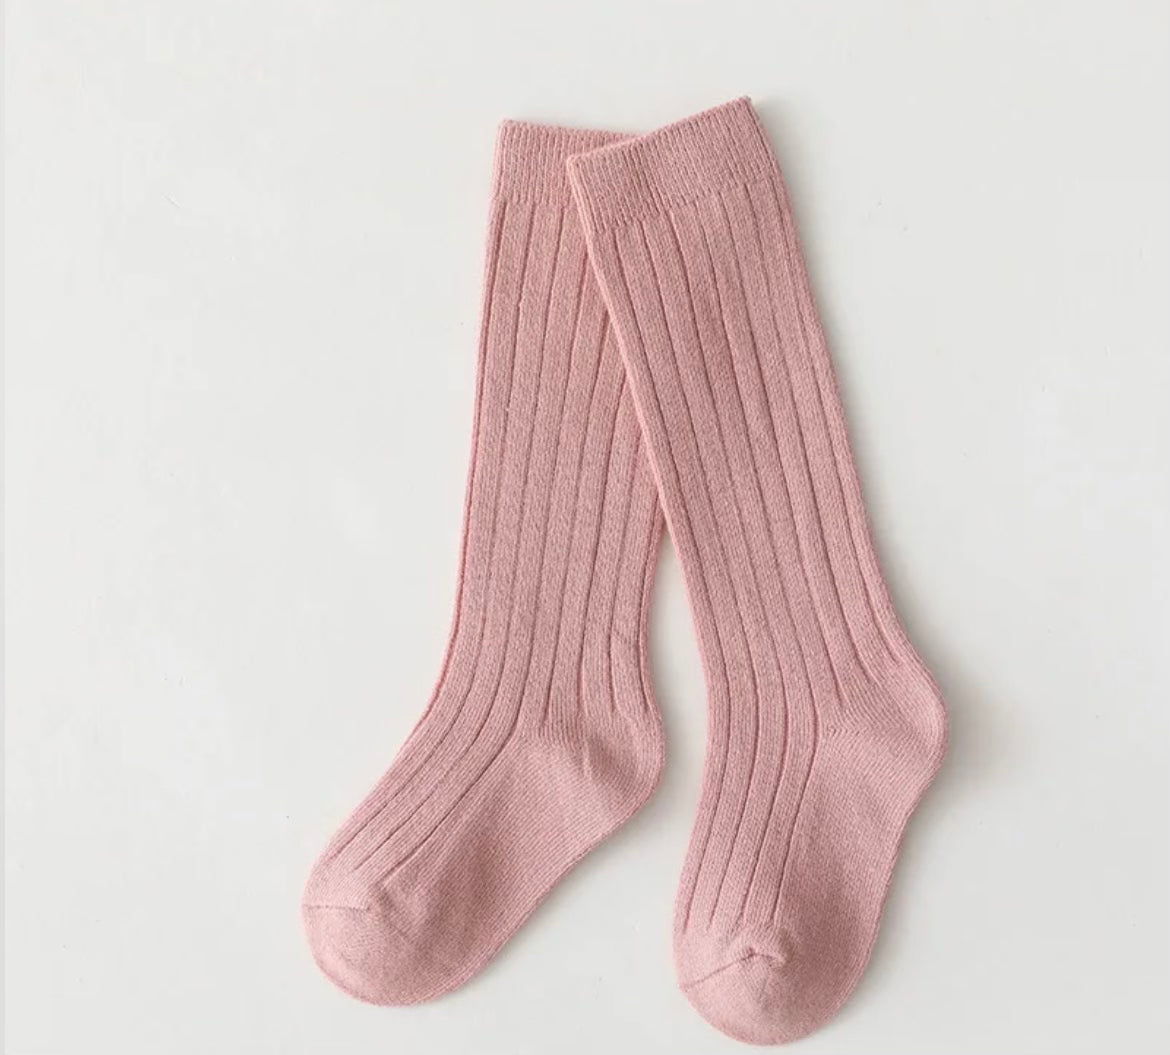 New S/S ribbed socks